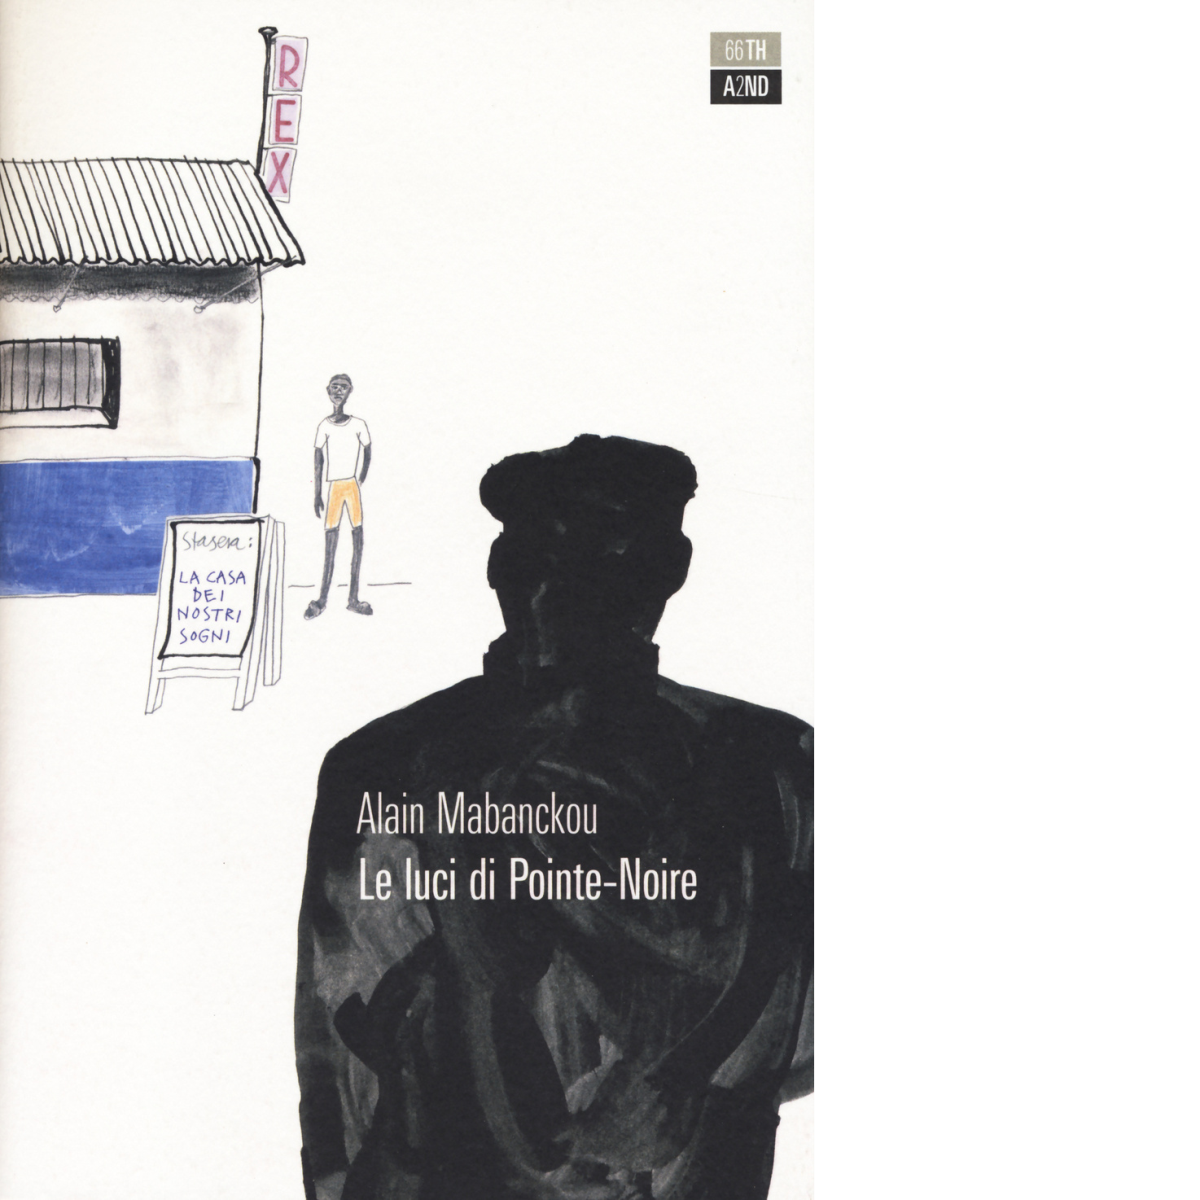 Le luci di Pointe-Noire di Alain Mabanckou,  2014,  66th And 2nd libro usato